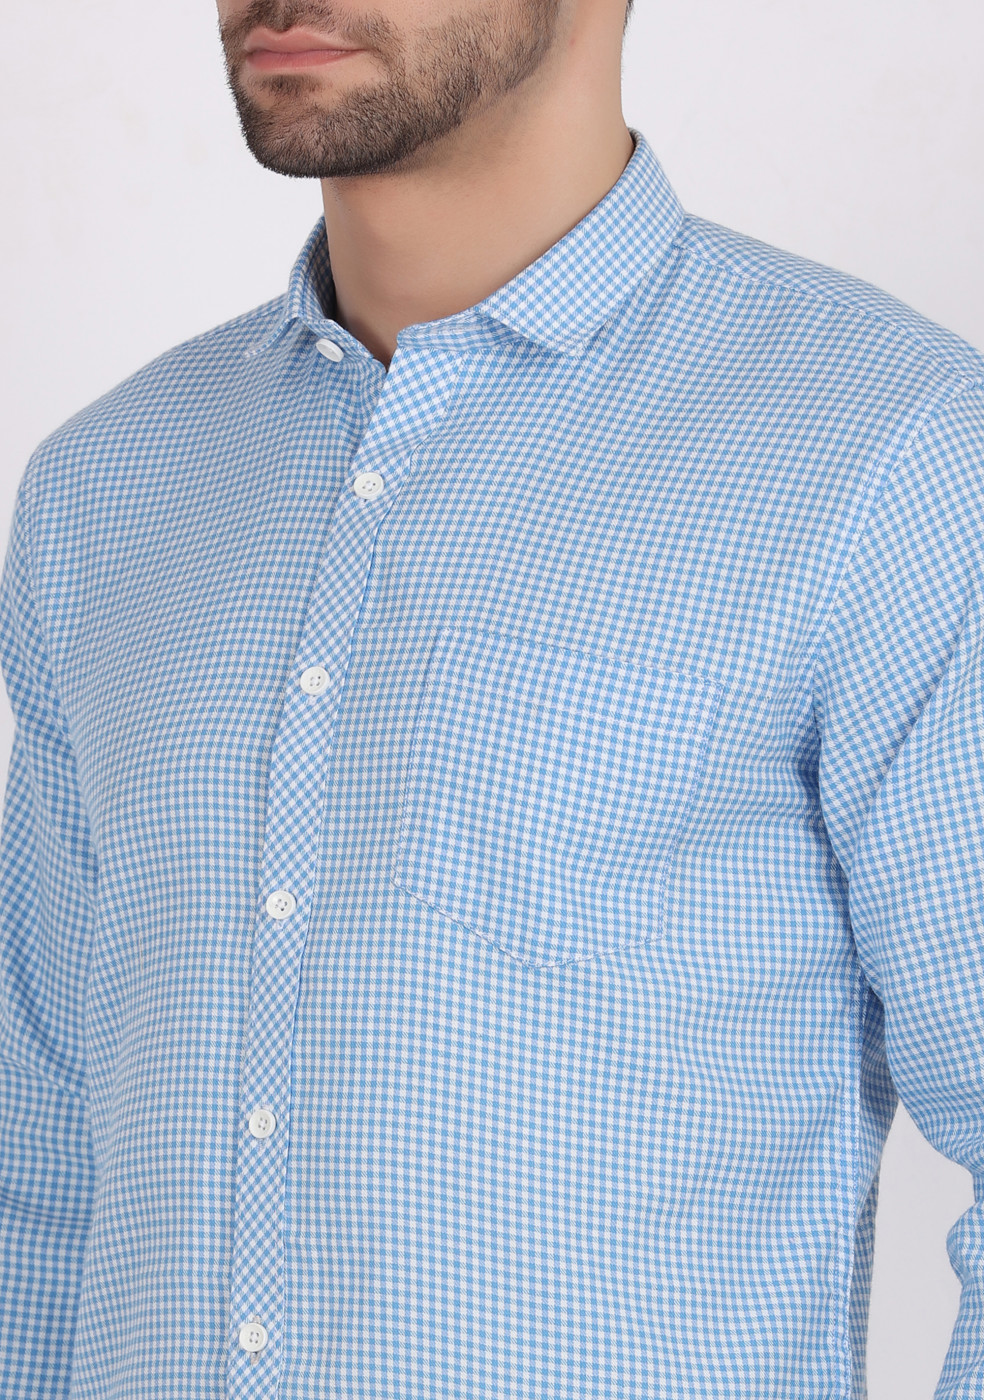 ASHTOM Sky Blue Color Small Check Shirt For Men